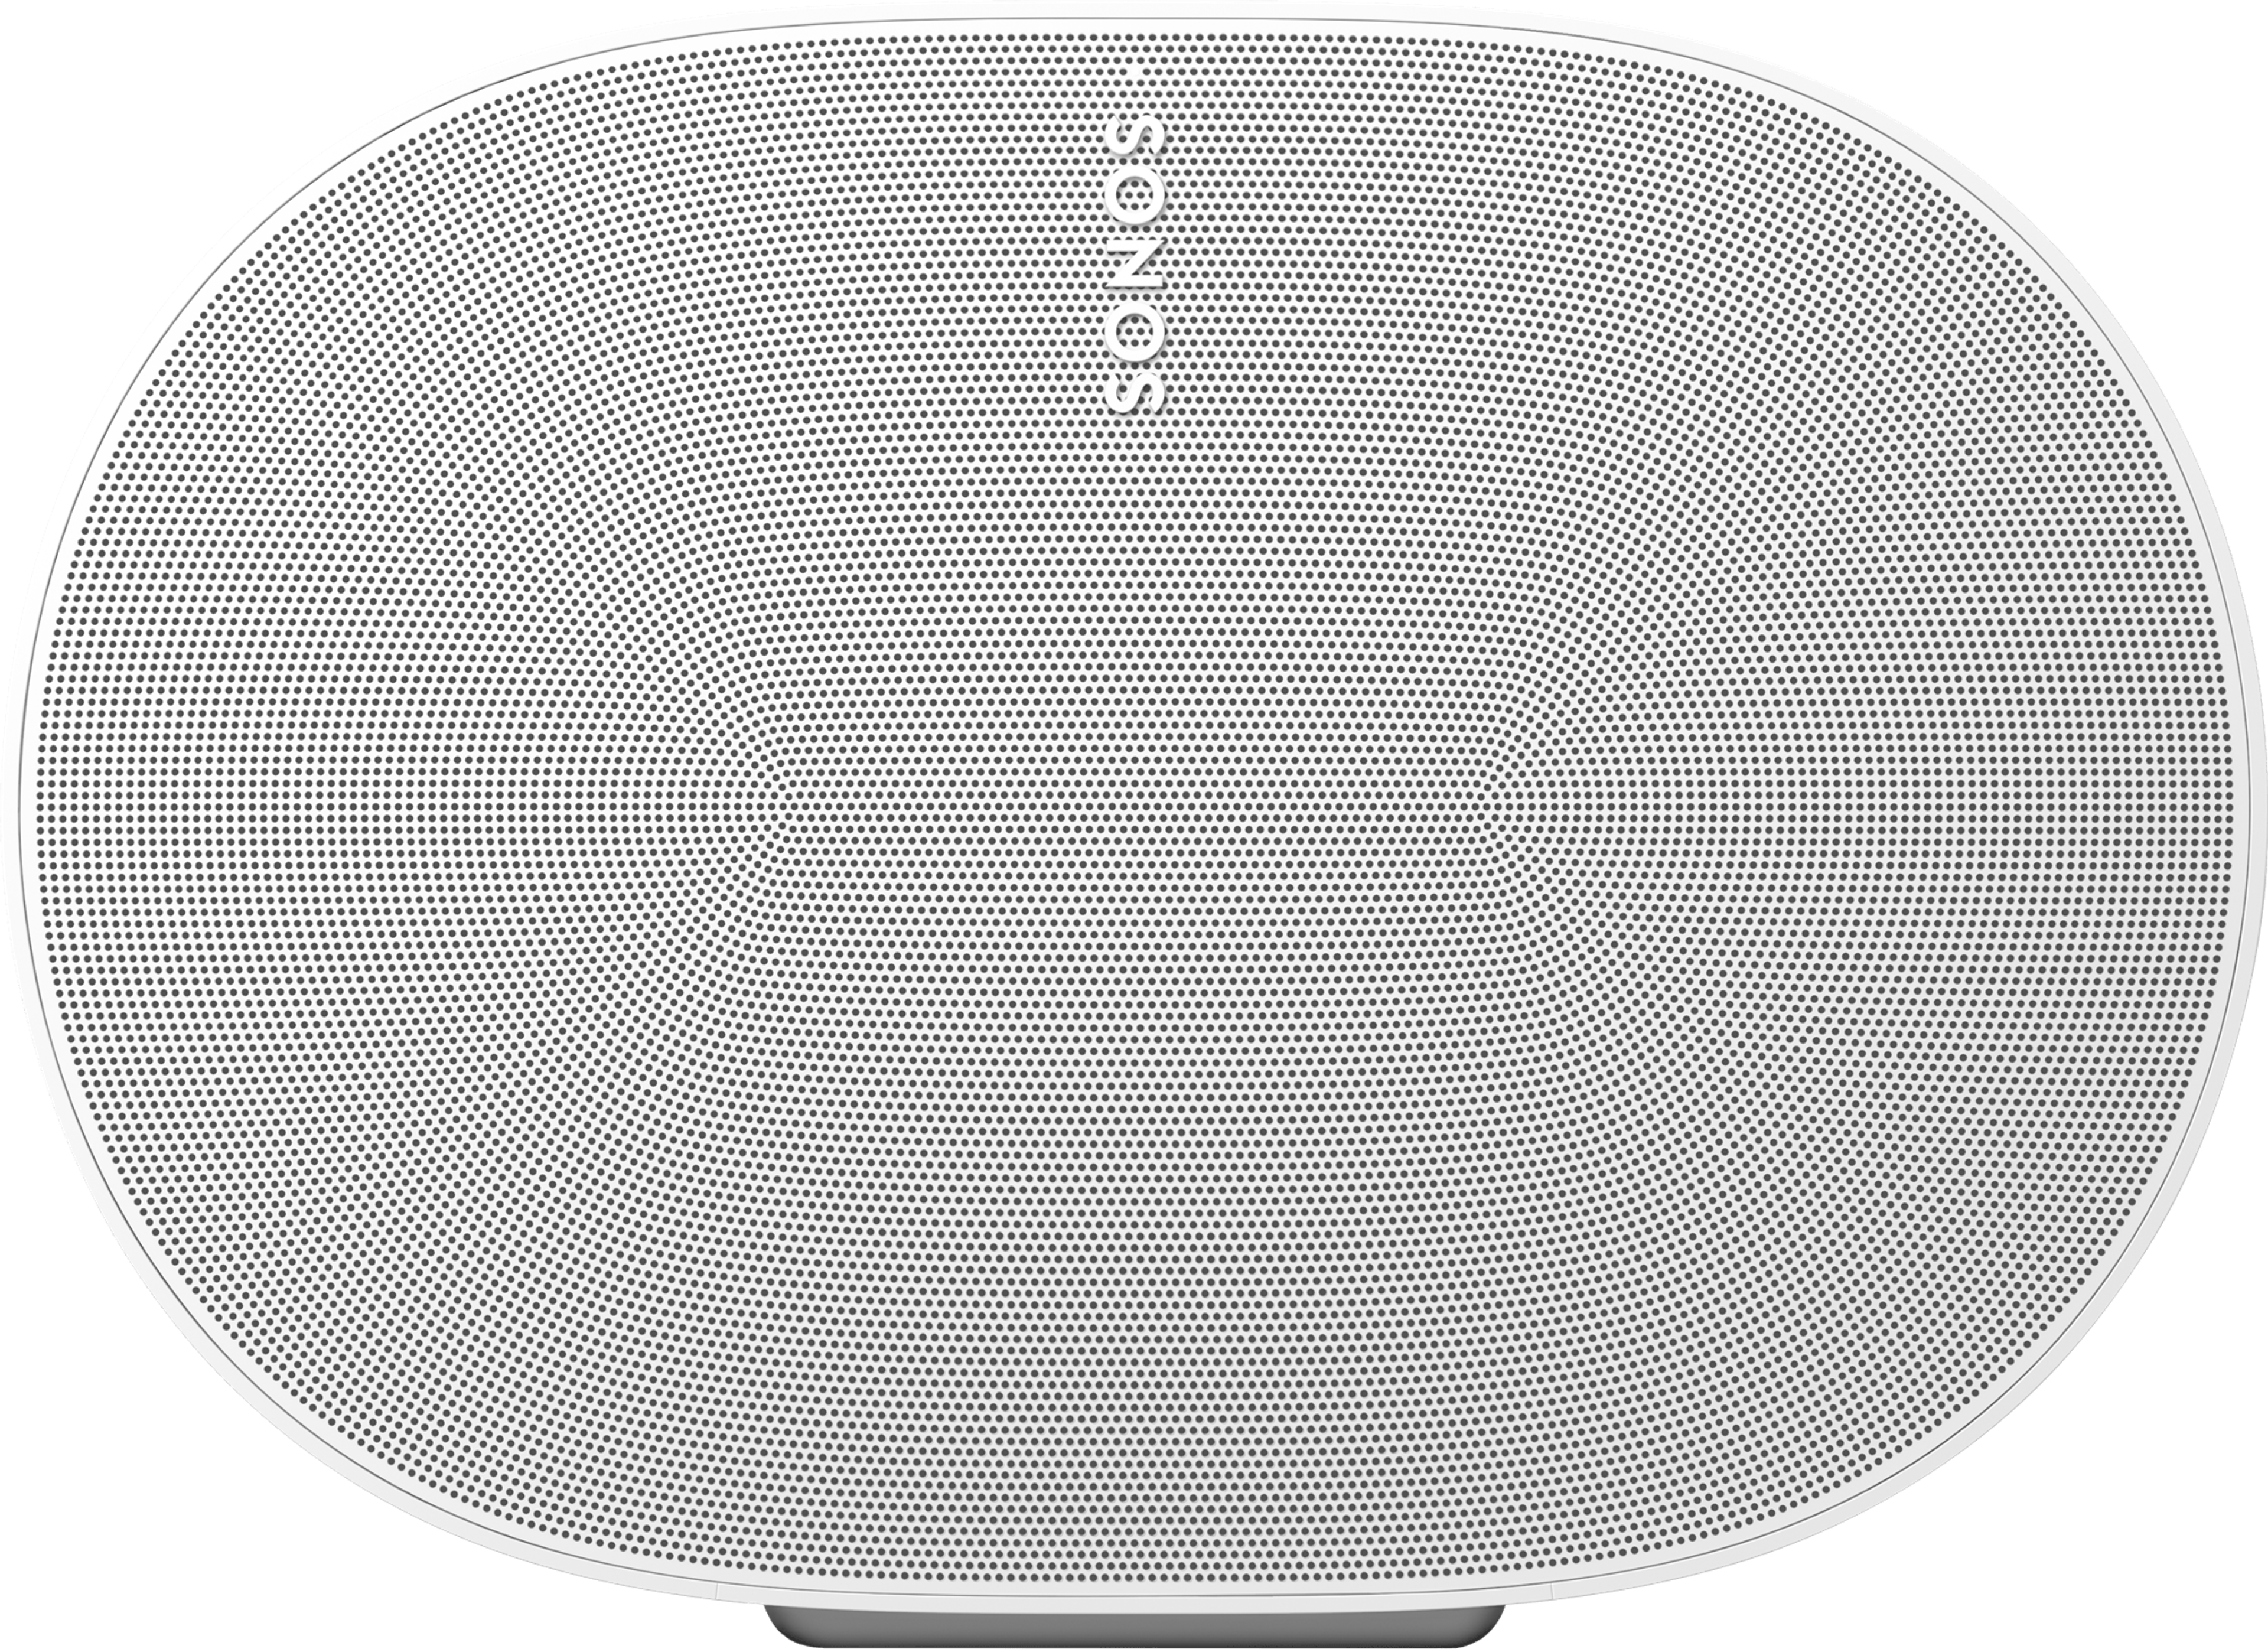 Närbild på framsidan av en vit Sonos Era 300-högtalare